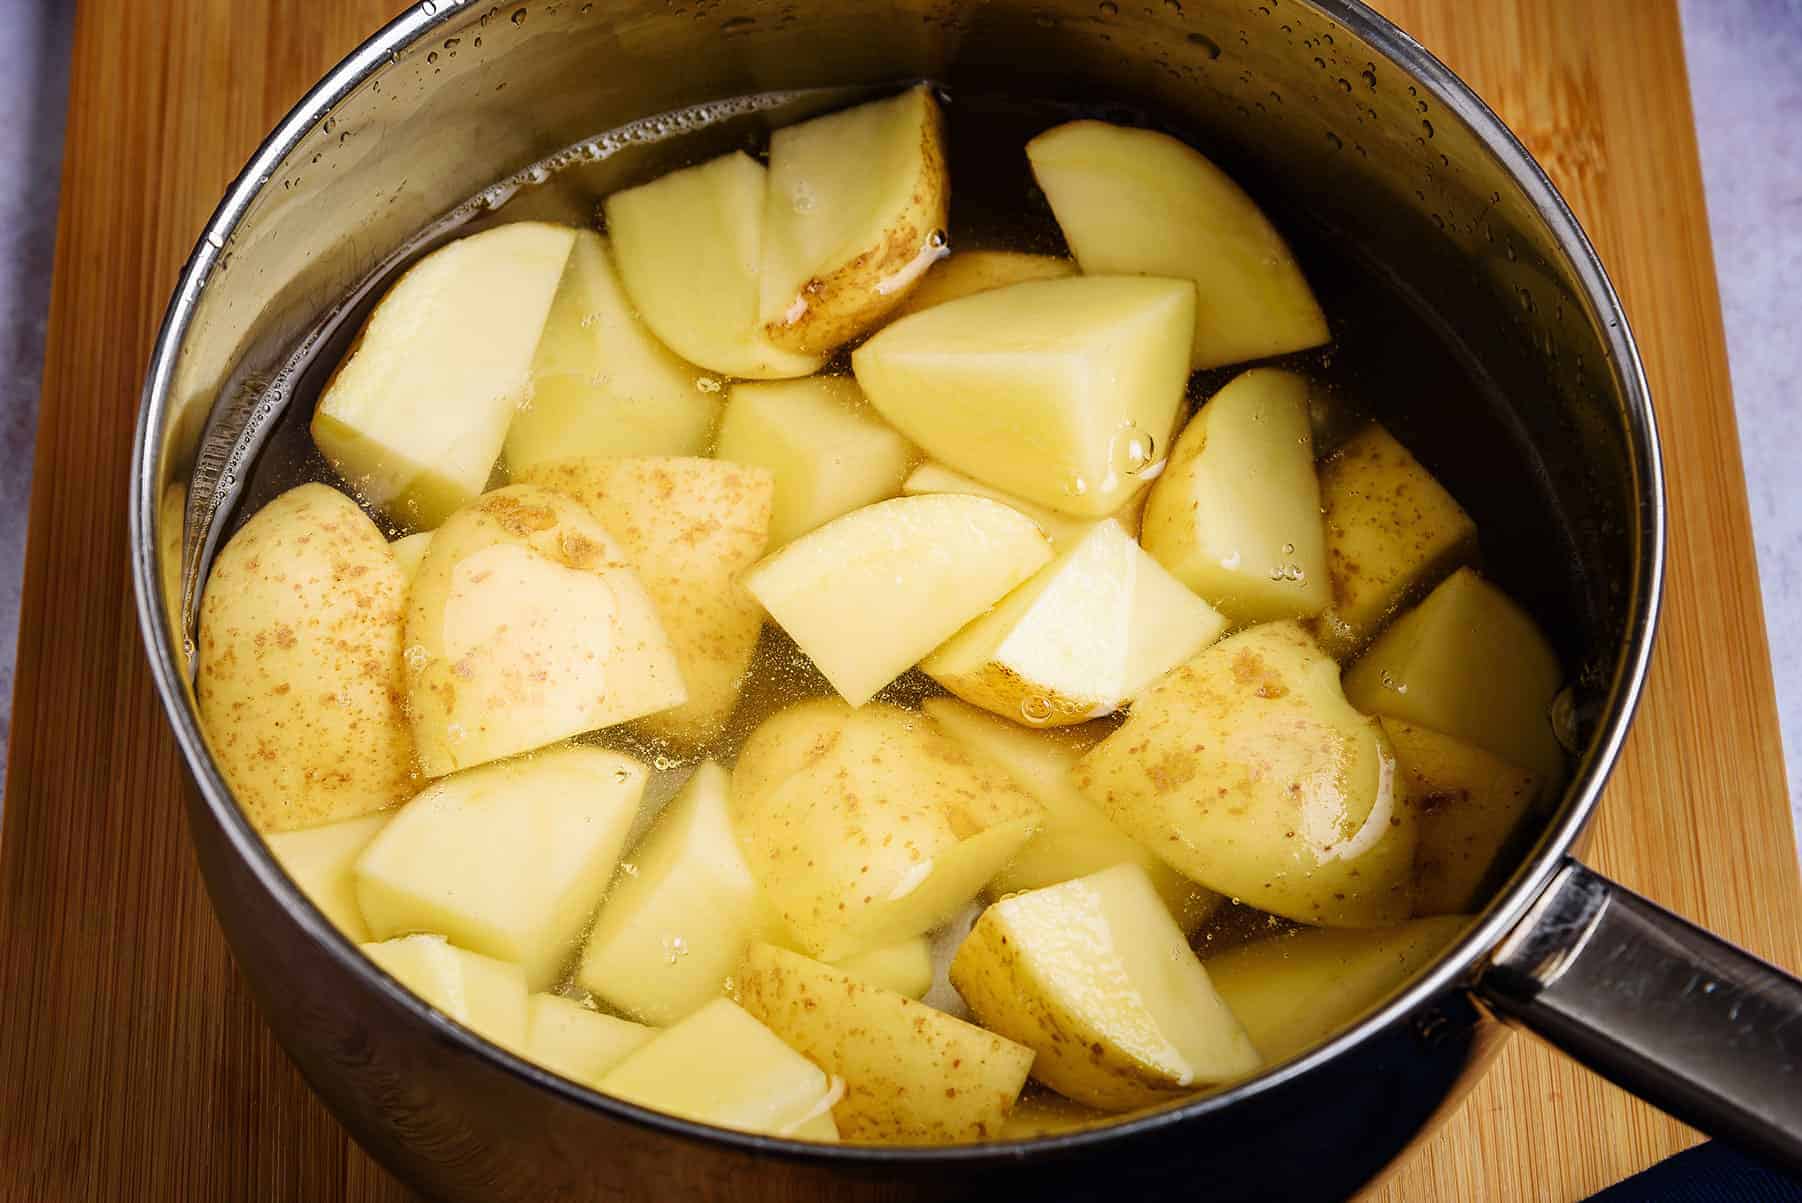 Chopped potatoes in a pan